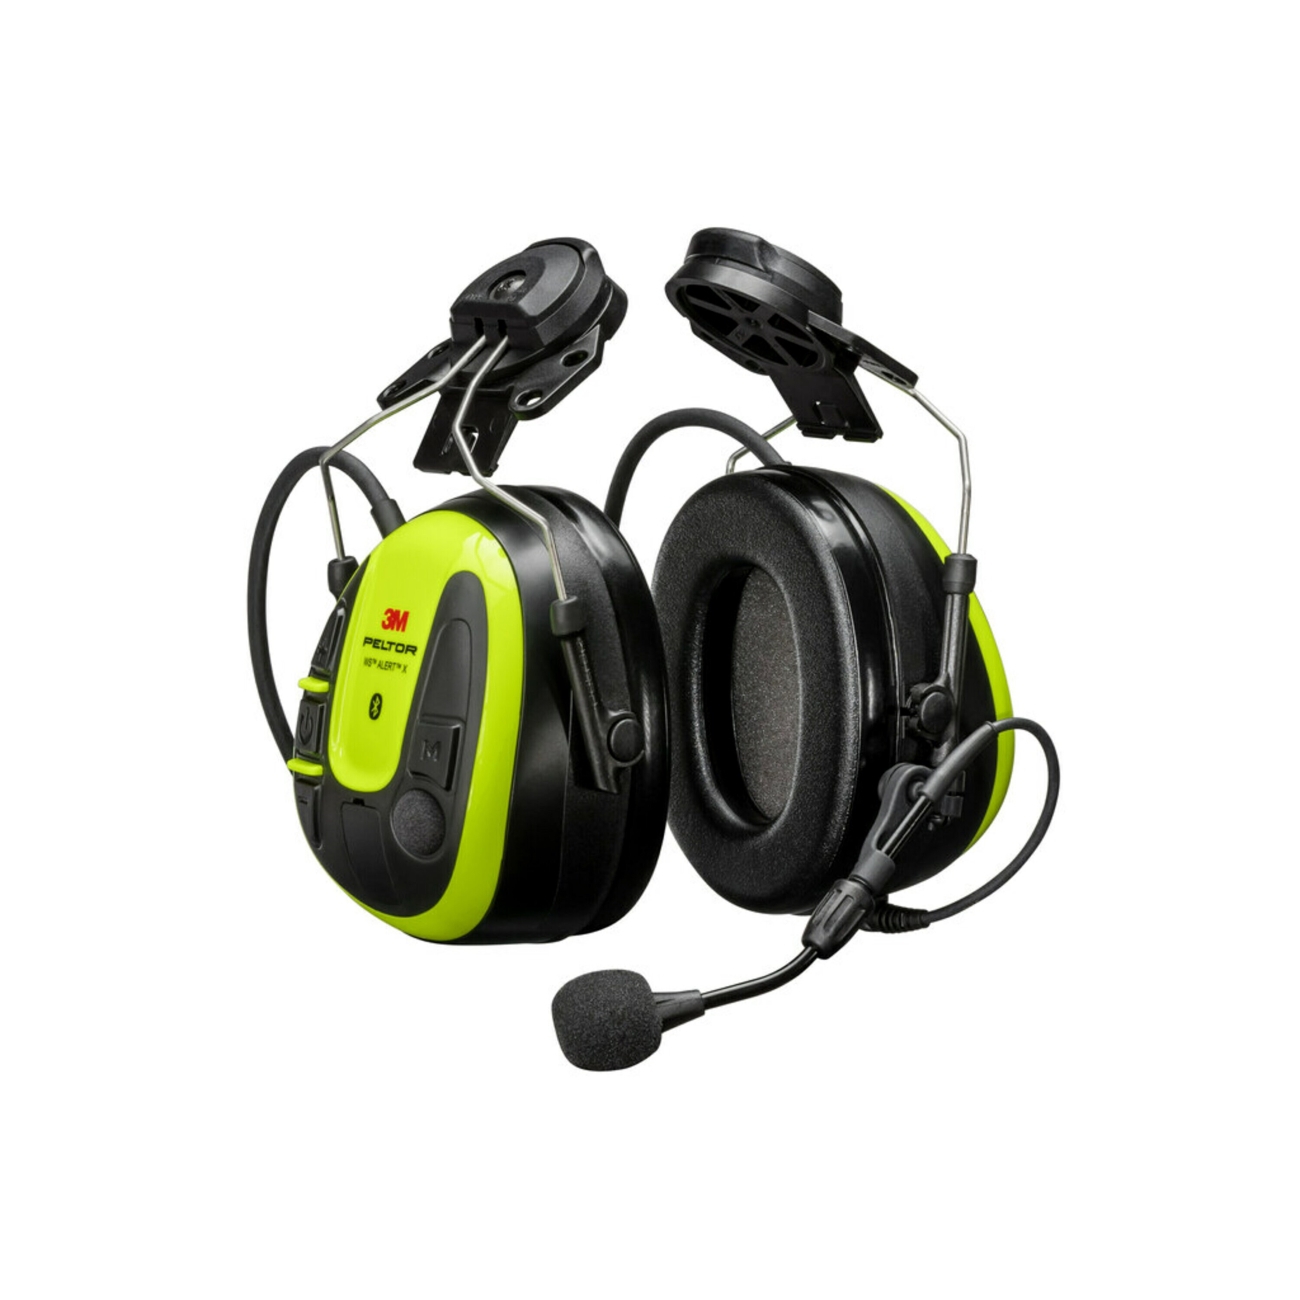 3M PELTOR Auricular WS ALERT X, 30 dB, tecnología Bluetooth, fijación al casco, compatible con aplicación móvil, amarillo brillante, MRX21A4WS6